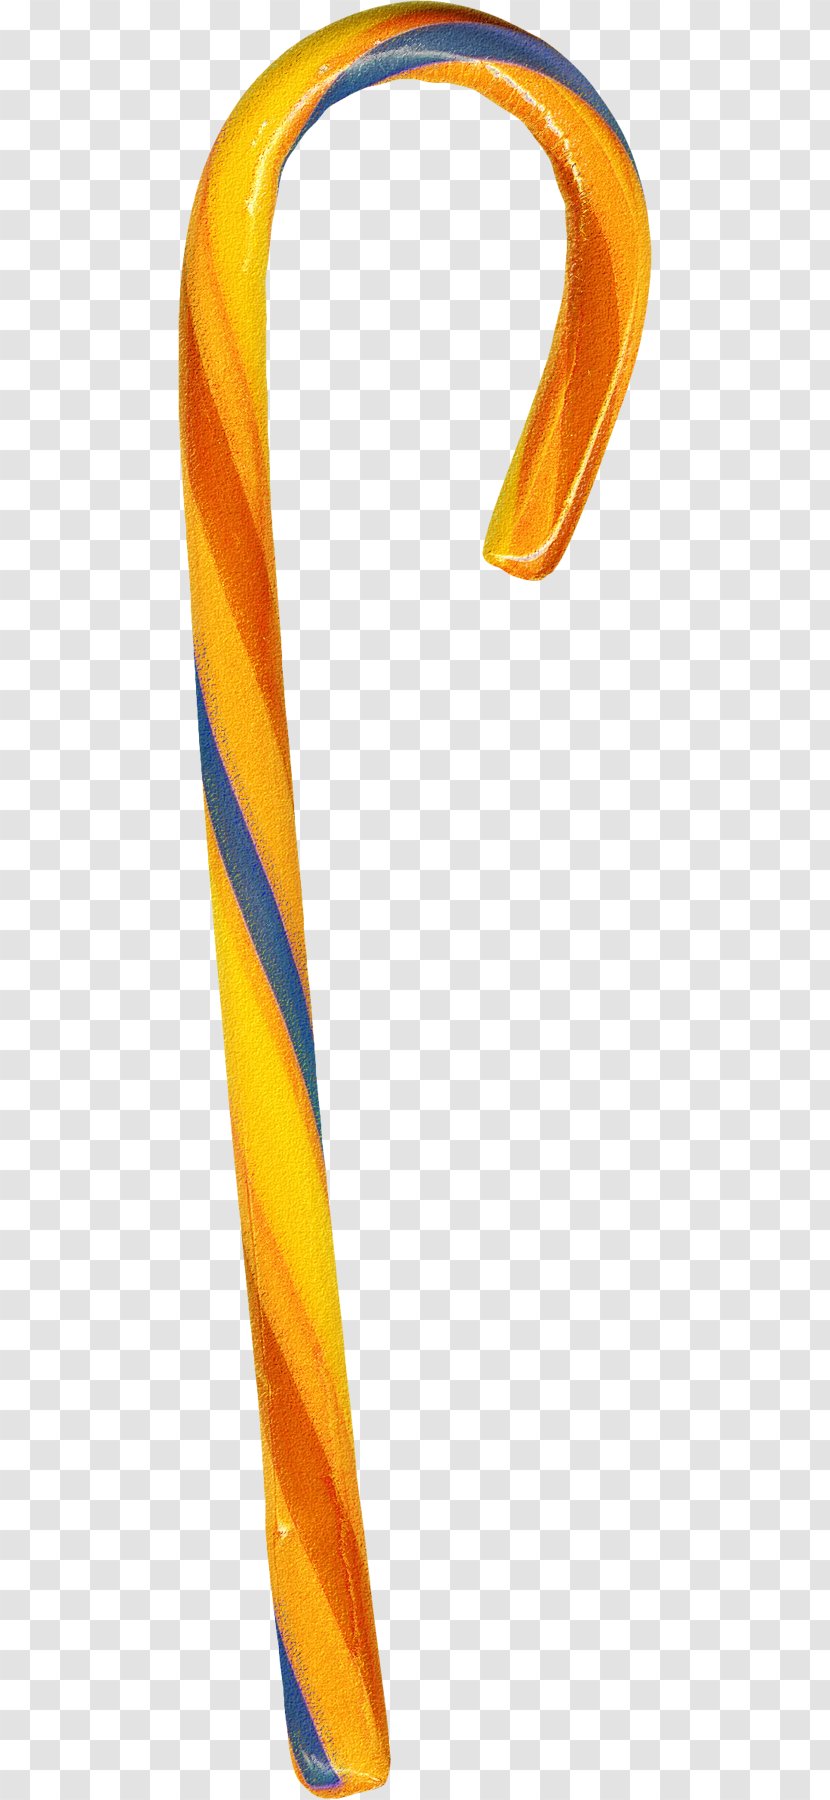 Candy Cane Stick Lollipop Crutch - Orange Crutches Transparent PNG